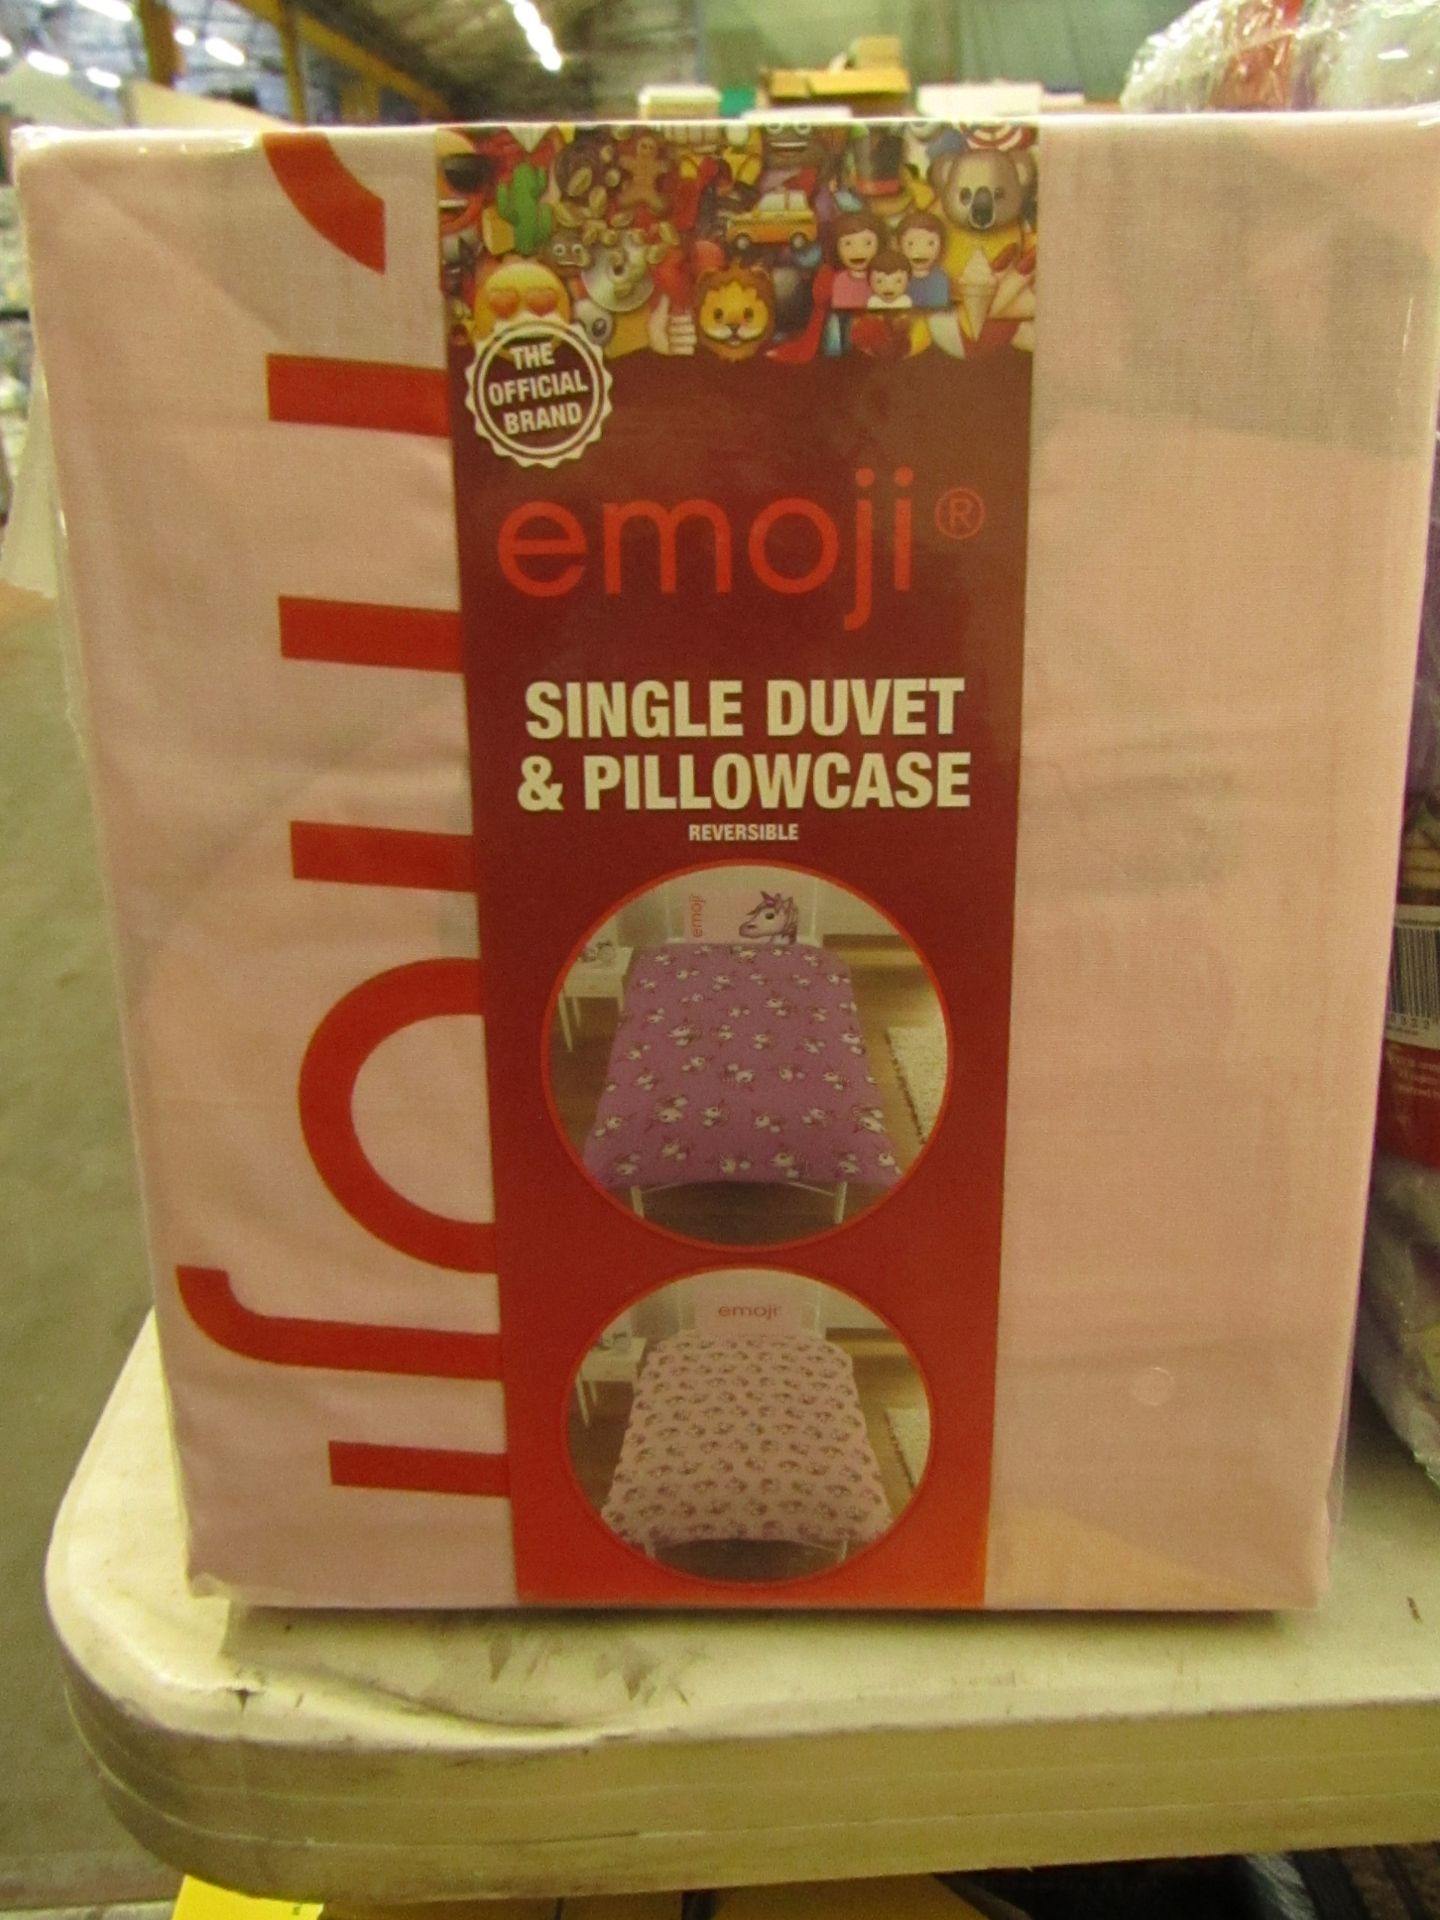 Emoji Single Duvet & Pillow Case set. Brand new & packaged